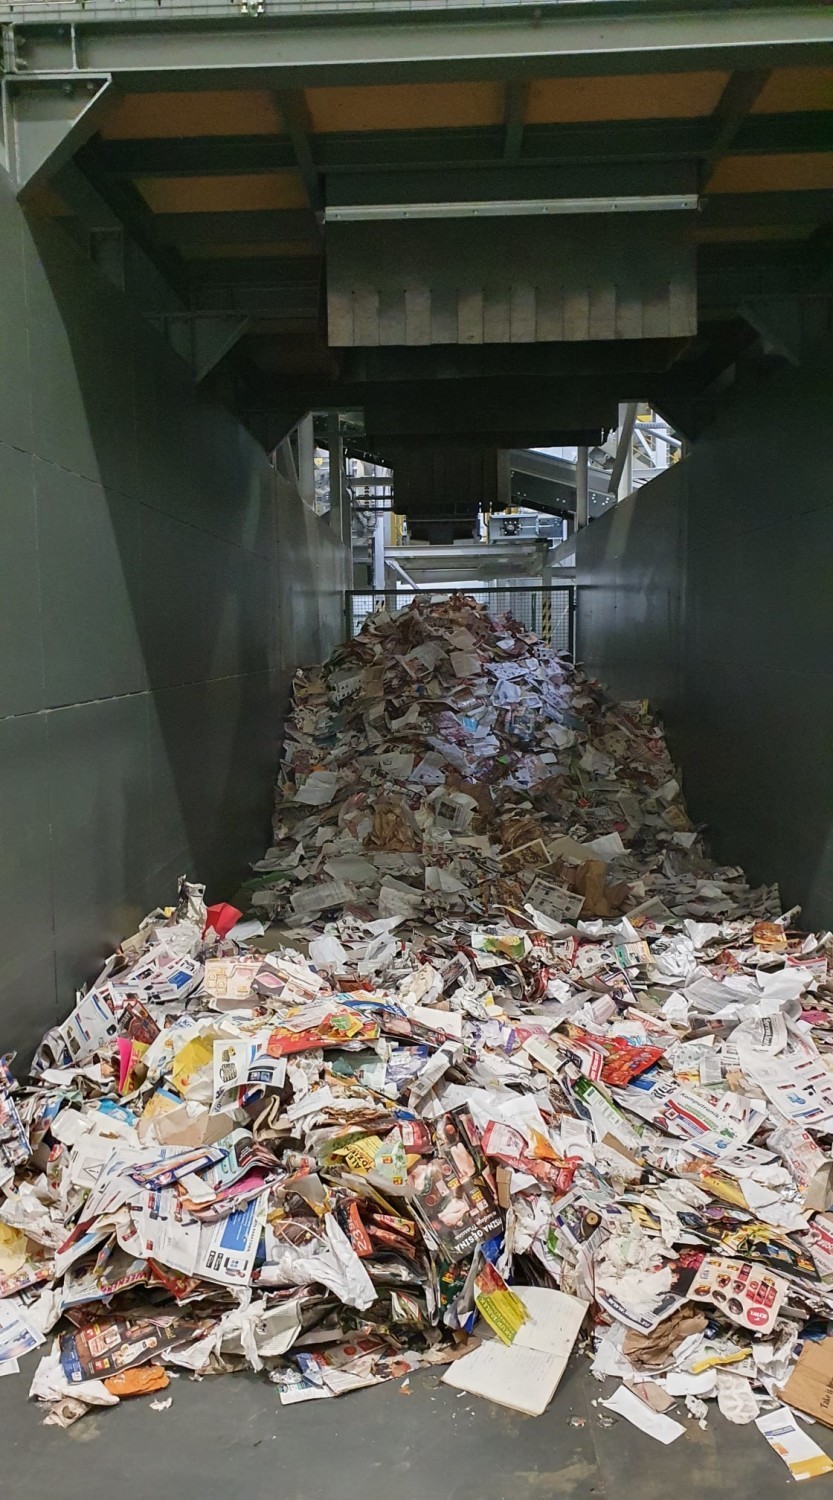 Inwestycje w Zakładzie Unieszkodliwiania Odpadów MPGK w Krośnie. Jak to wpłynie na opłaty za odbiór śmieci?